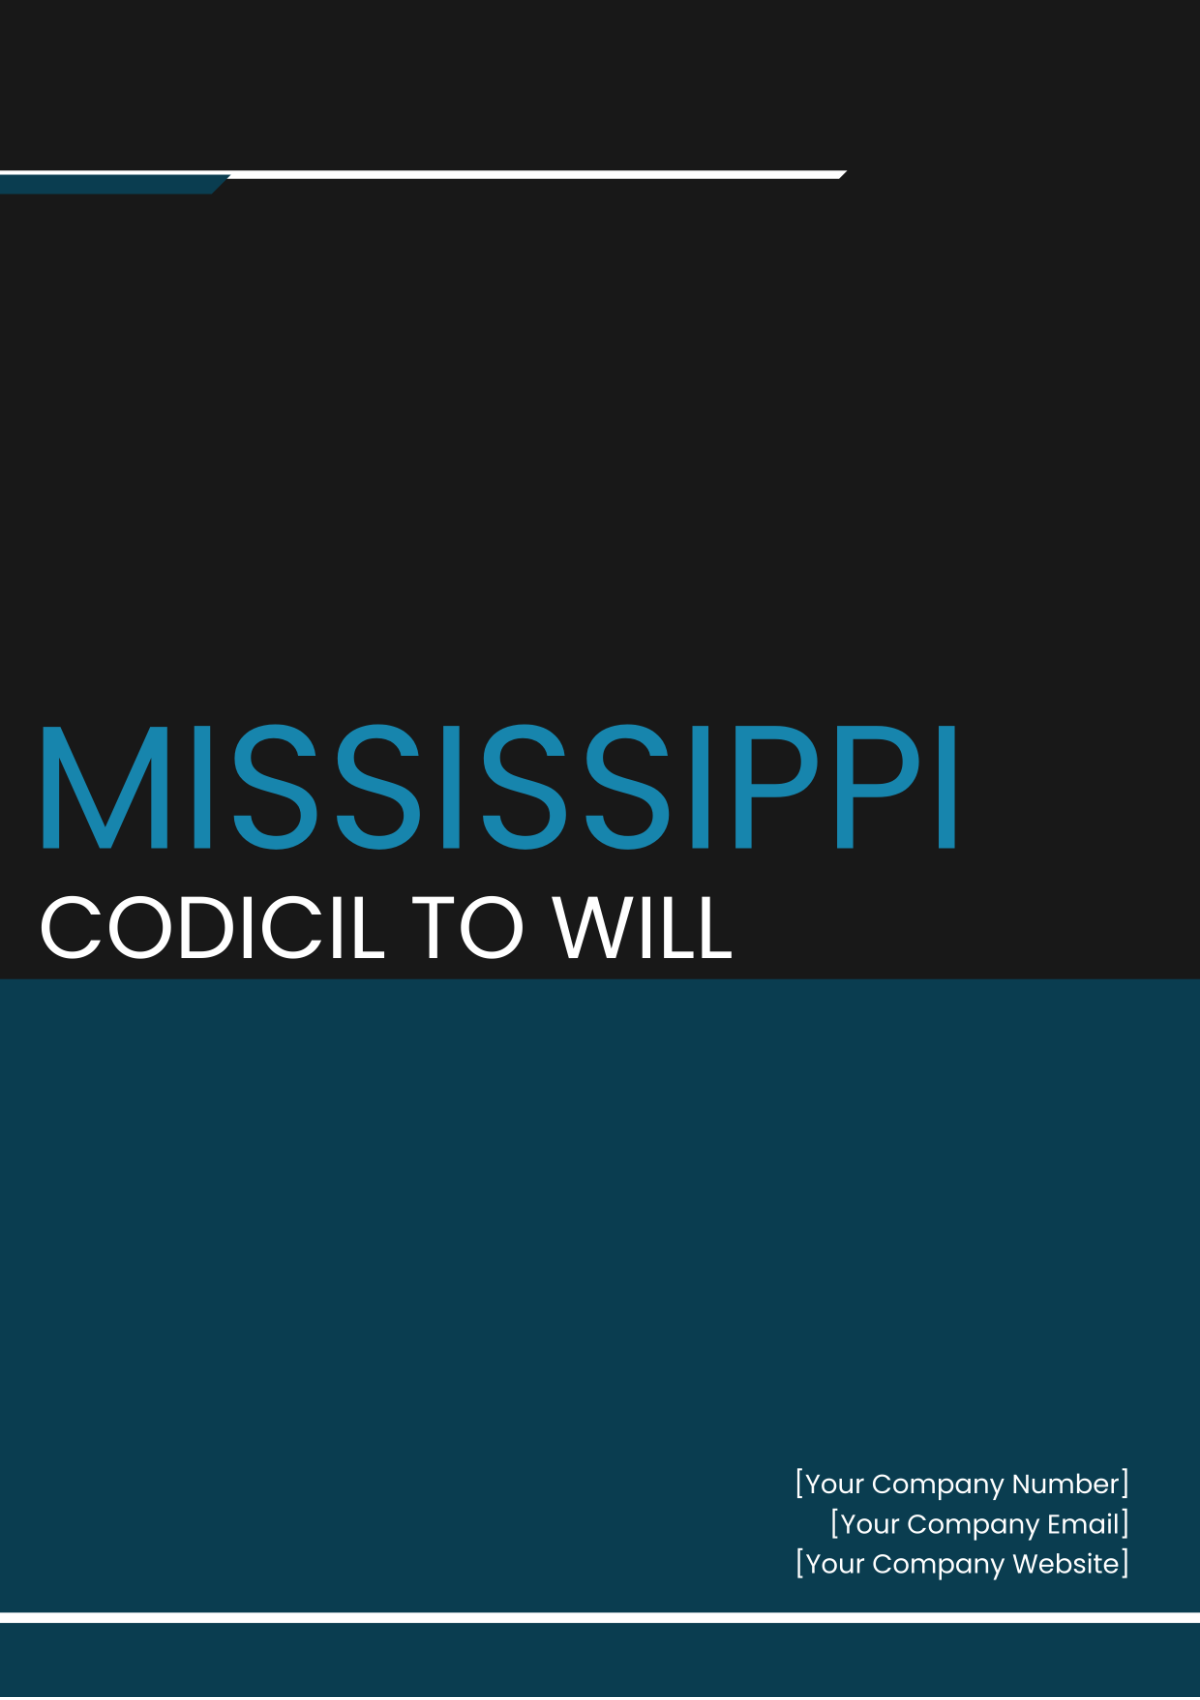 Mississippi Codicil to Will Template